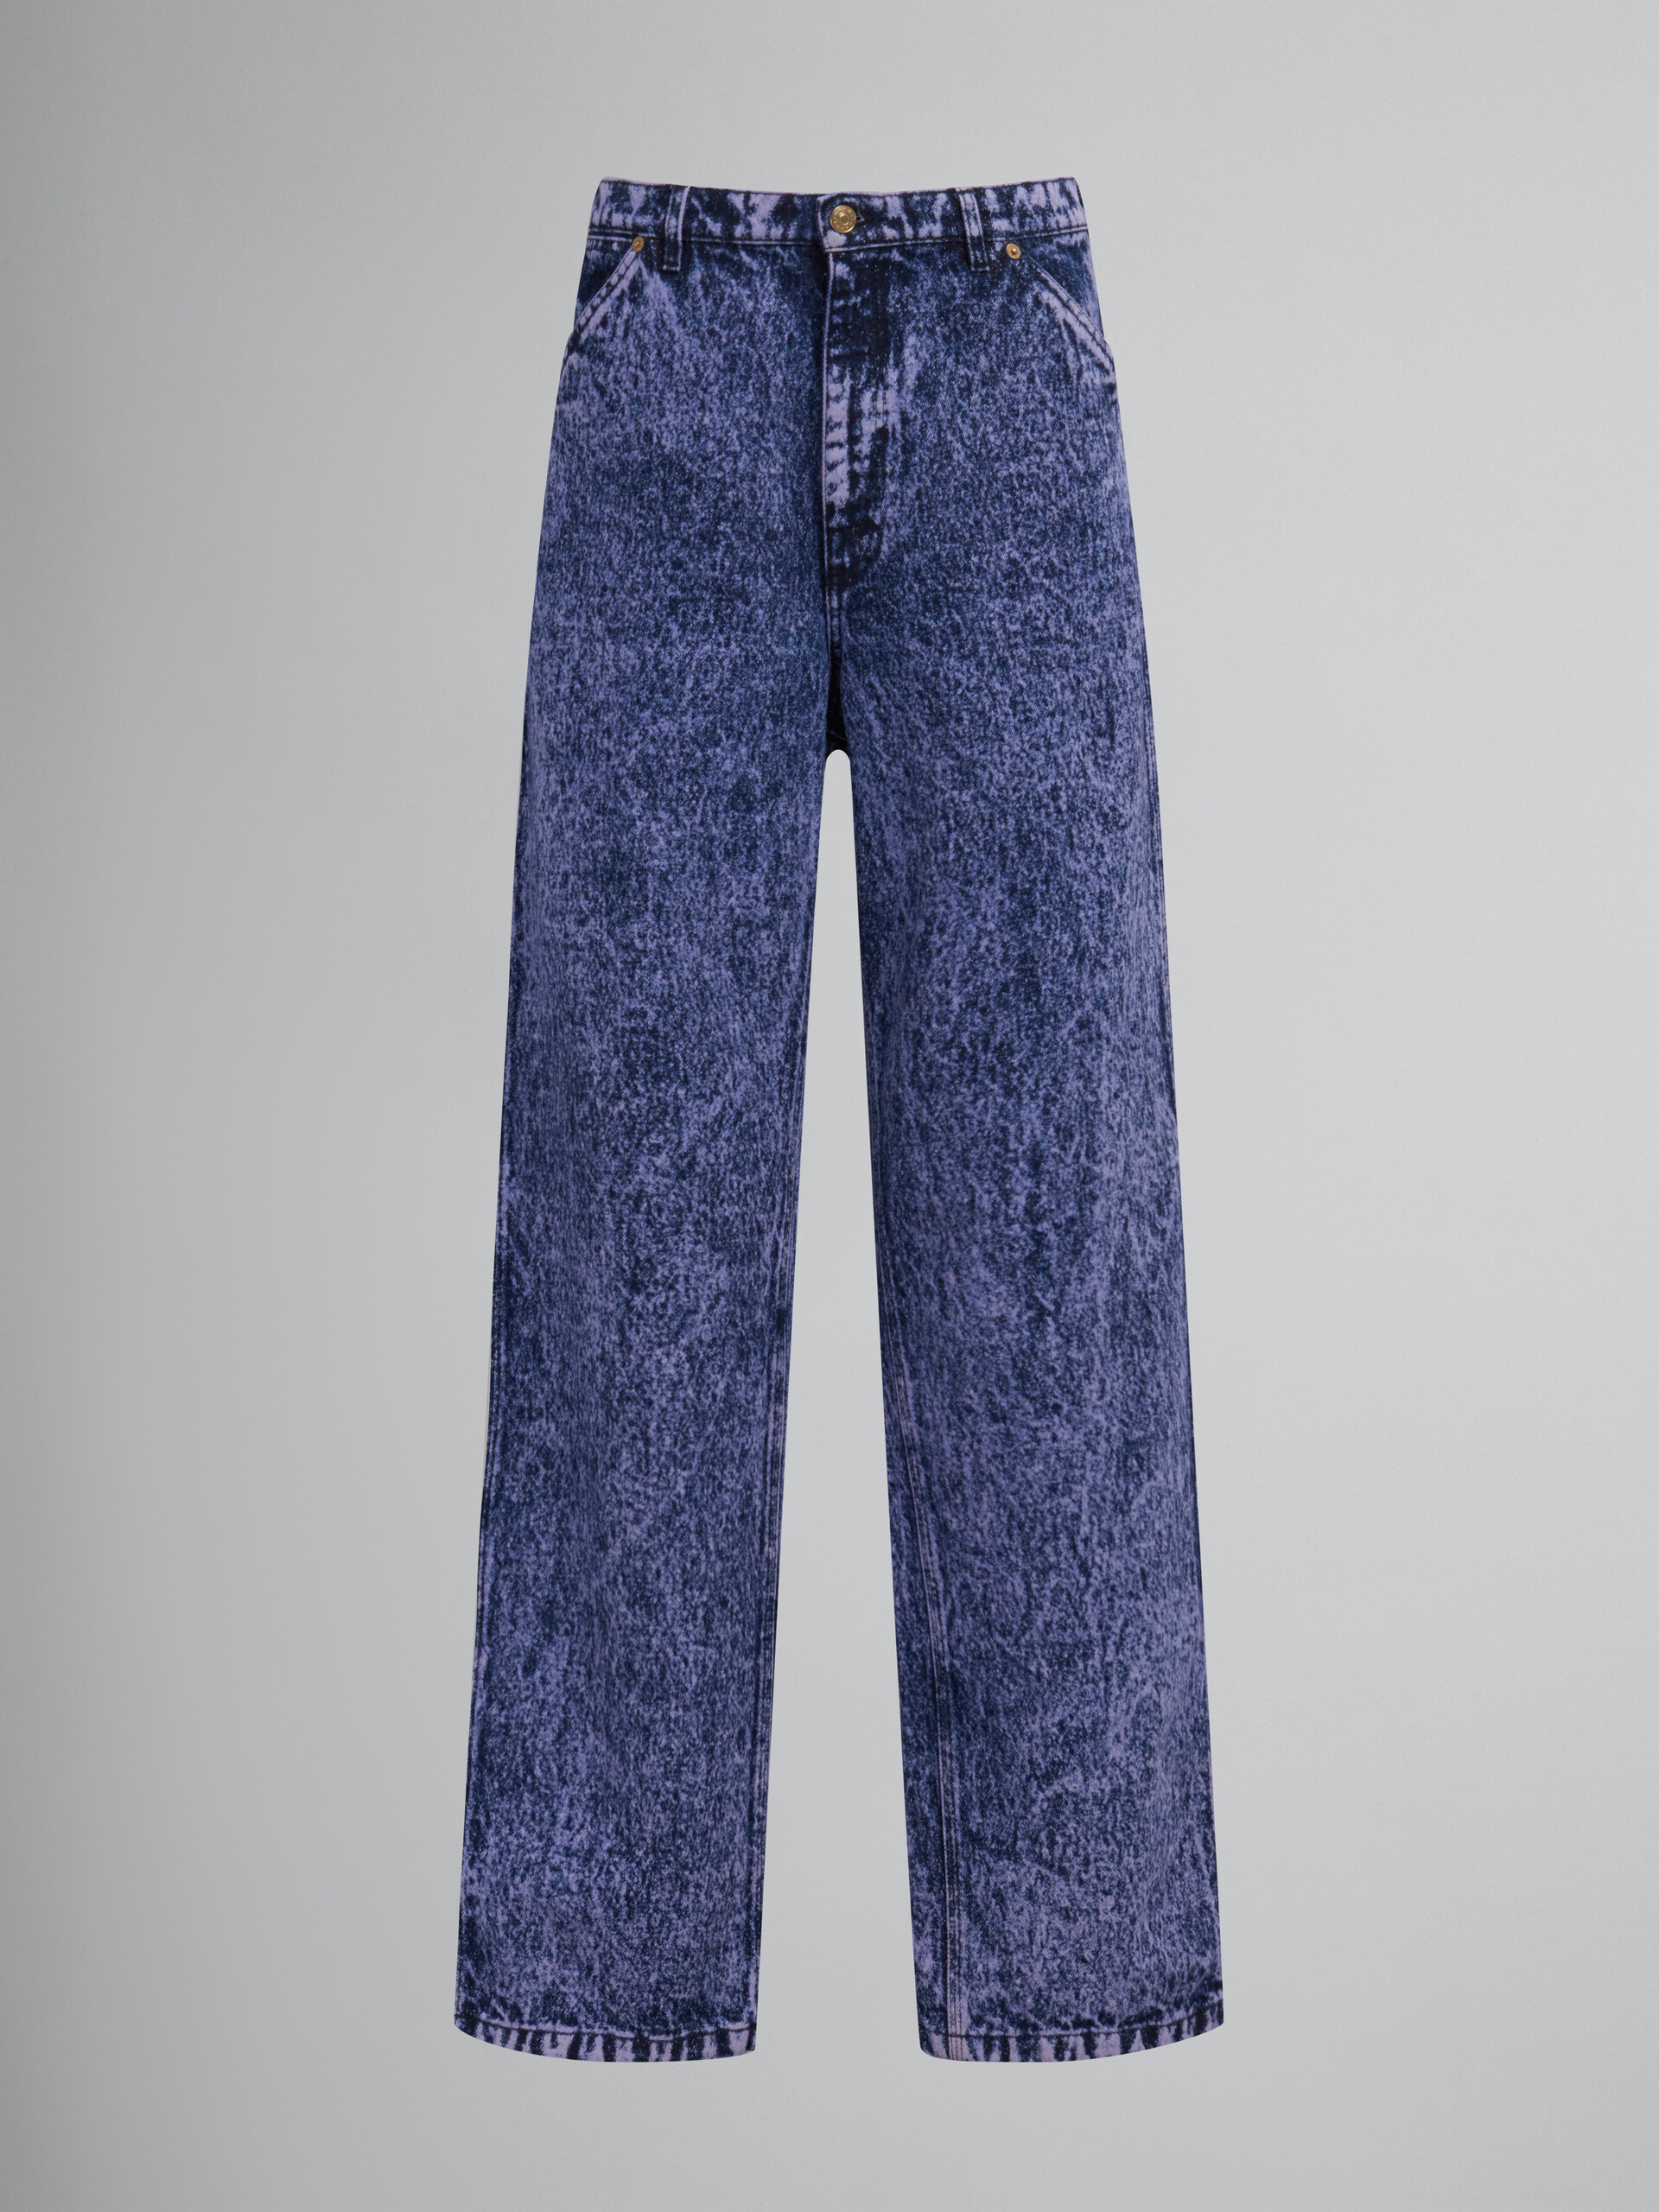 Jeans in denim blu effetto marmorizzato - Pantaloni - Image 1